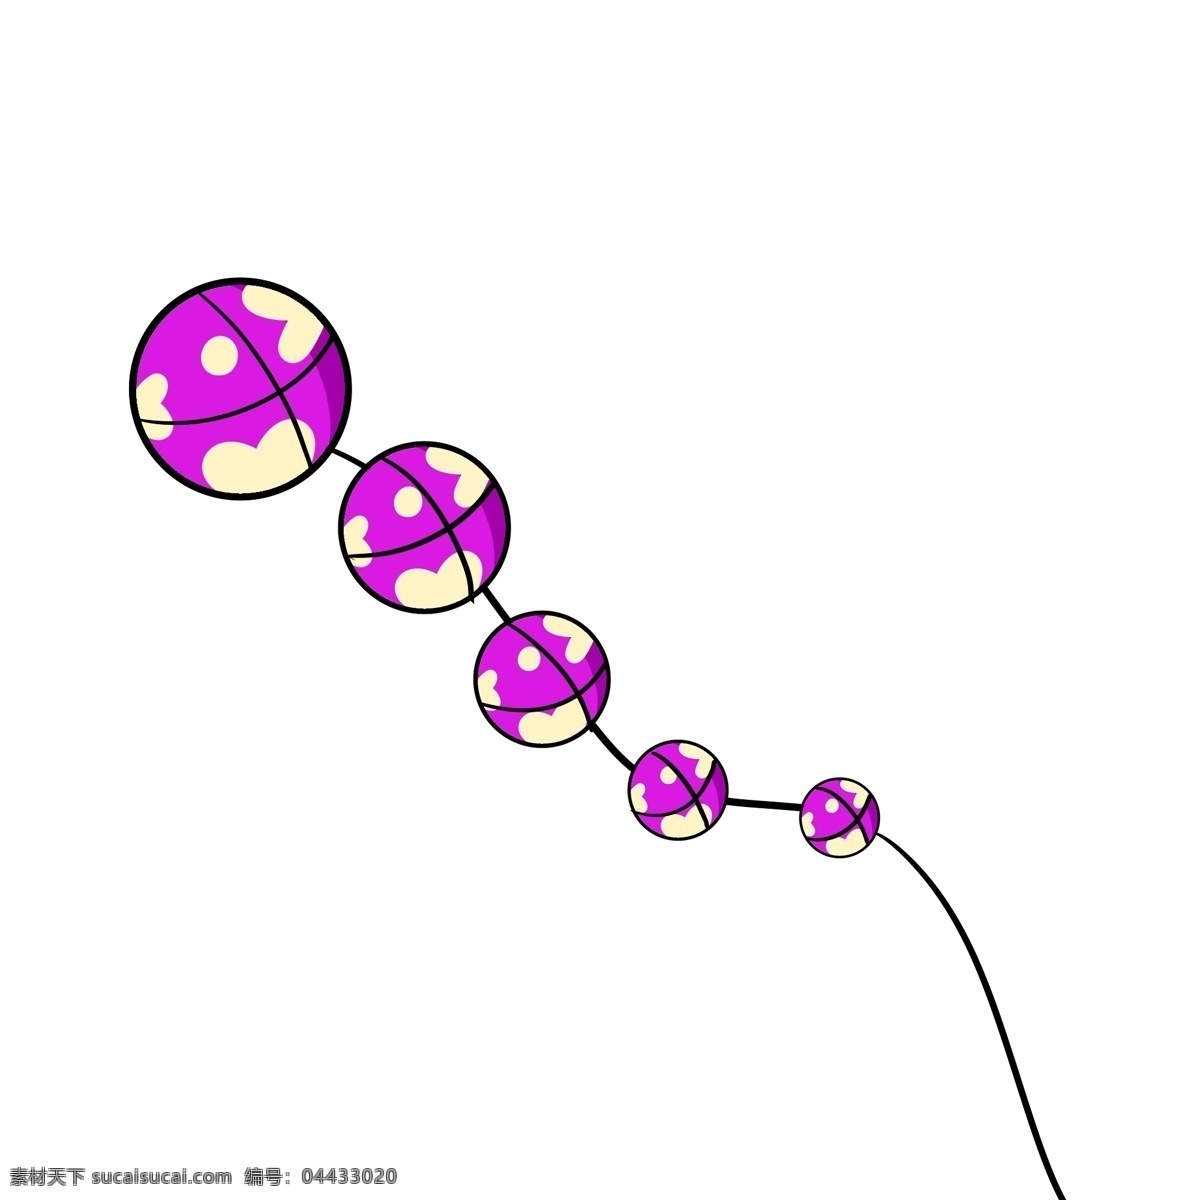 圆形 彩色 风筝 插图 一体风筝 圆形风筝 漂浮的风筝 紫色风筝 心形装饰 漂亮的风筝 儿童风筝 黑色线绳